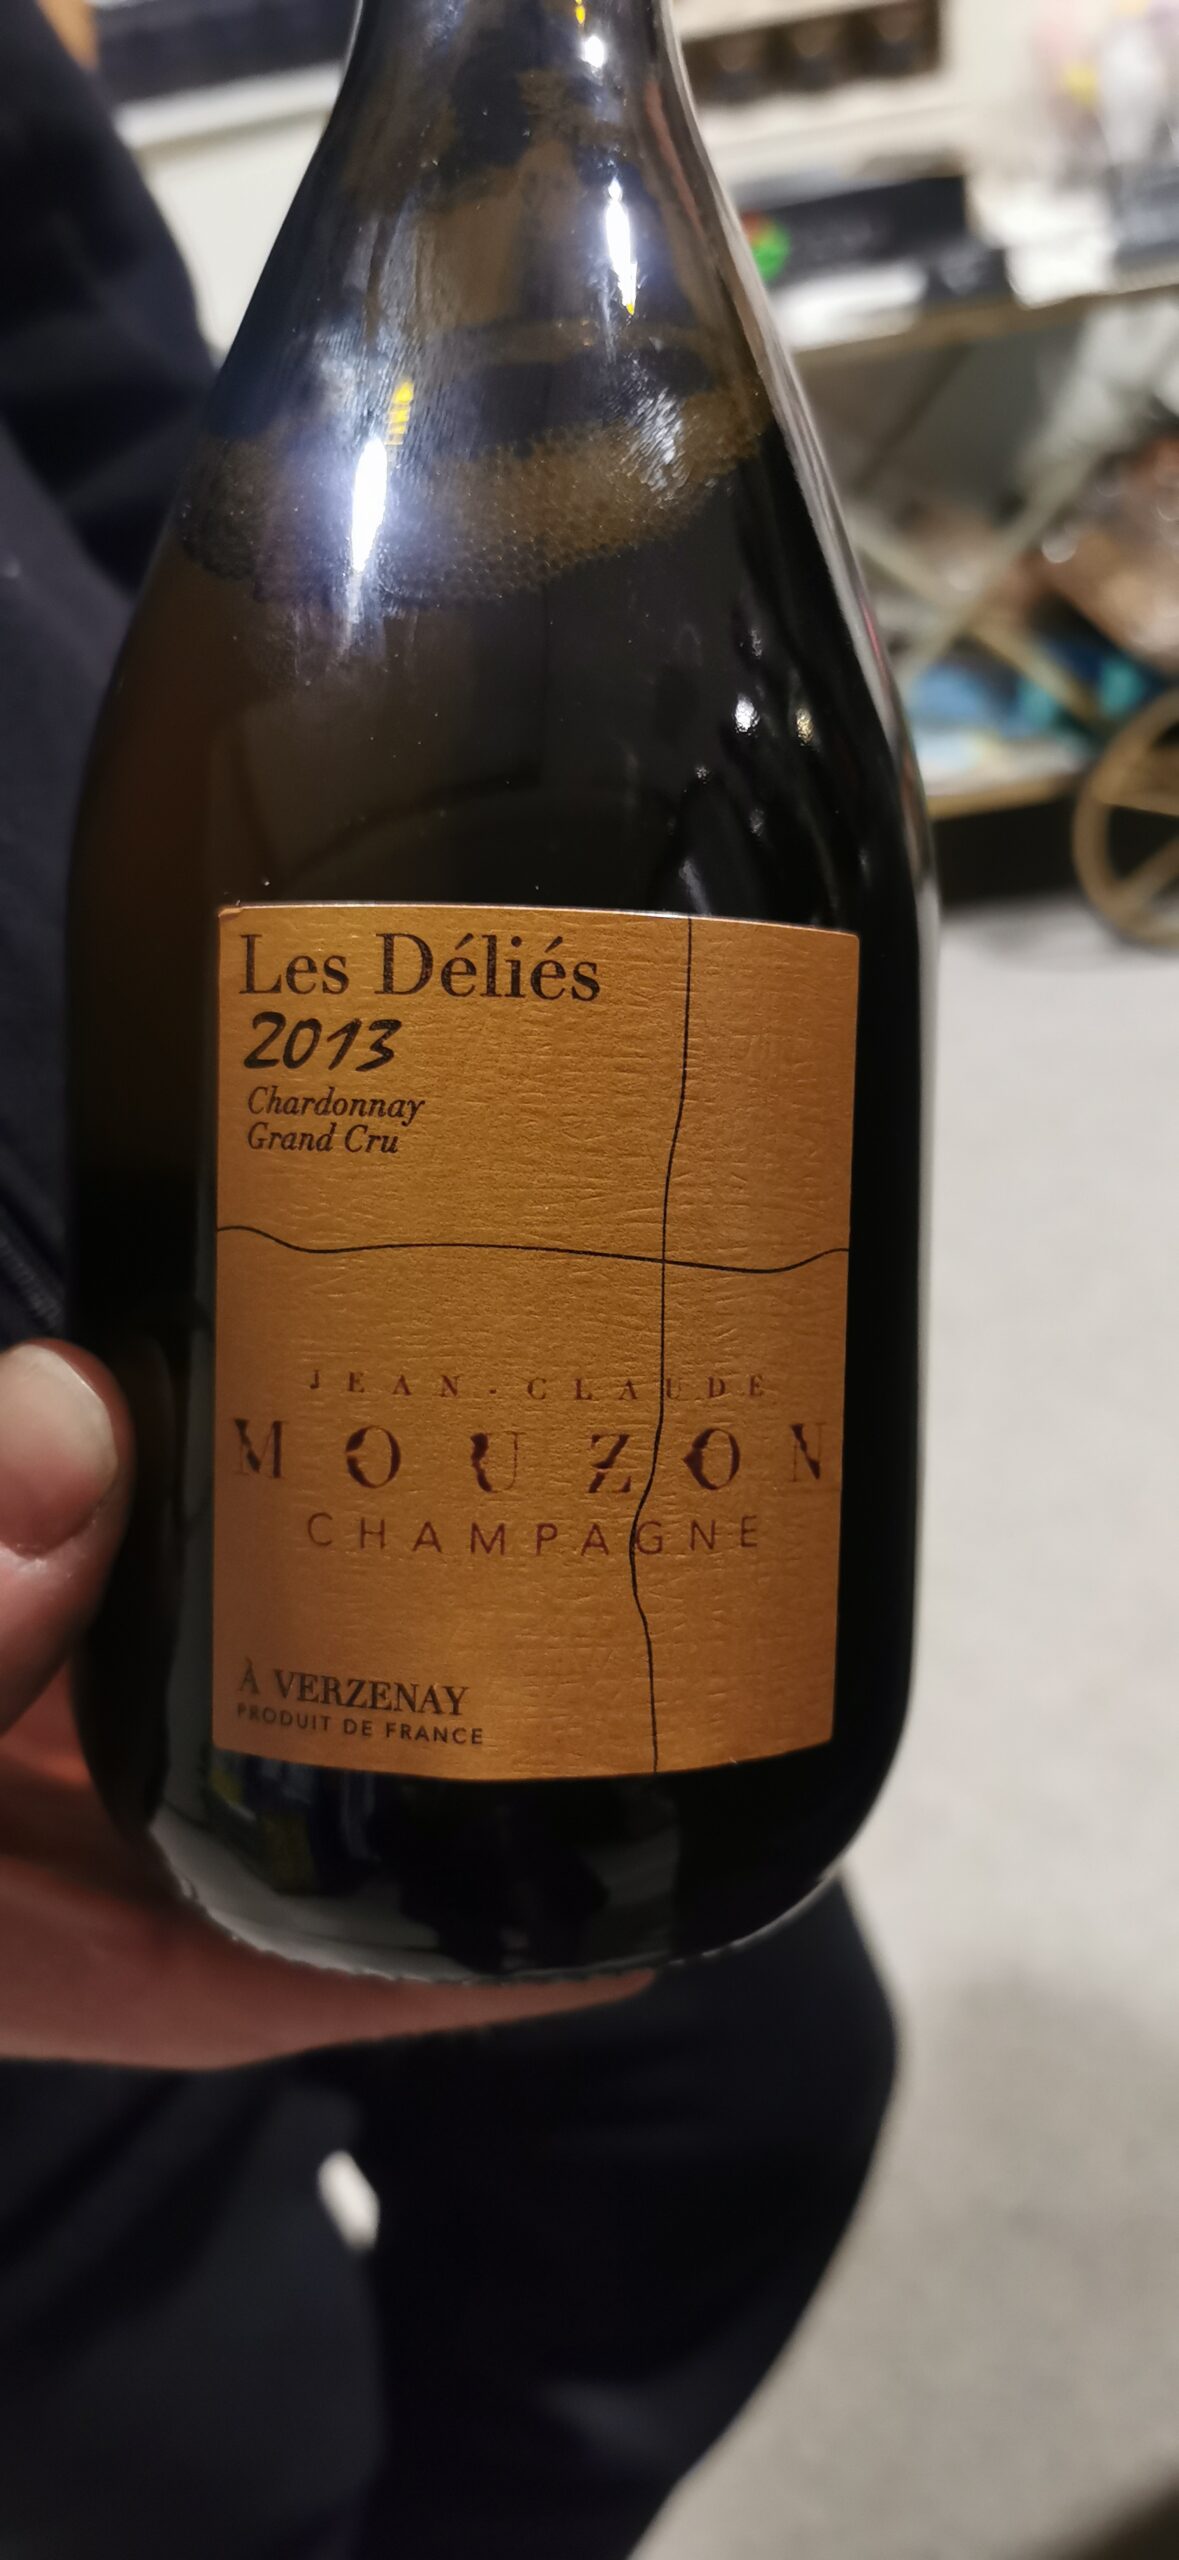 Le Déliés 2013 (100% Chardonnay) Champagne Jean Claude Mouzon, articolo e foto dell'autrice: Elsa Leandri in Champagne 2024, seconda tappa a Verzenay